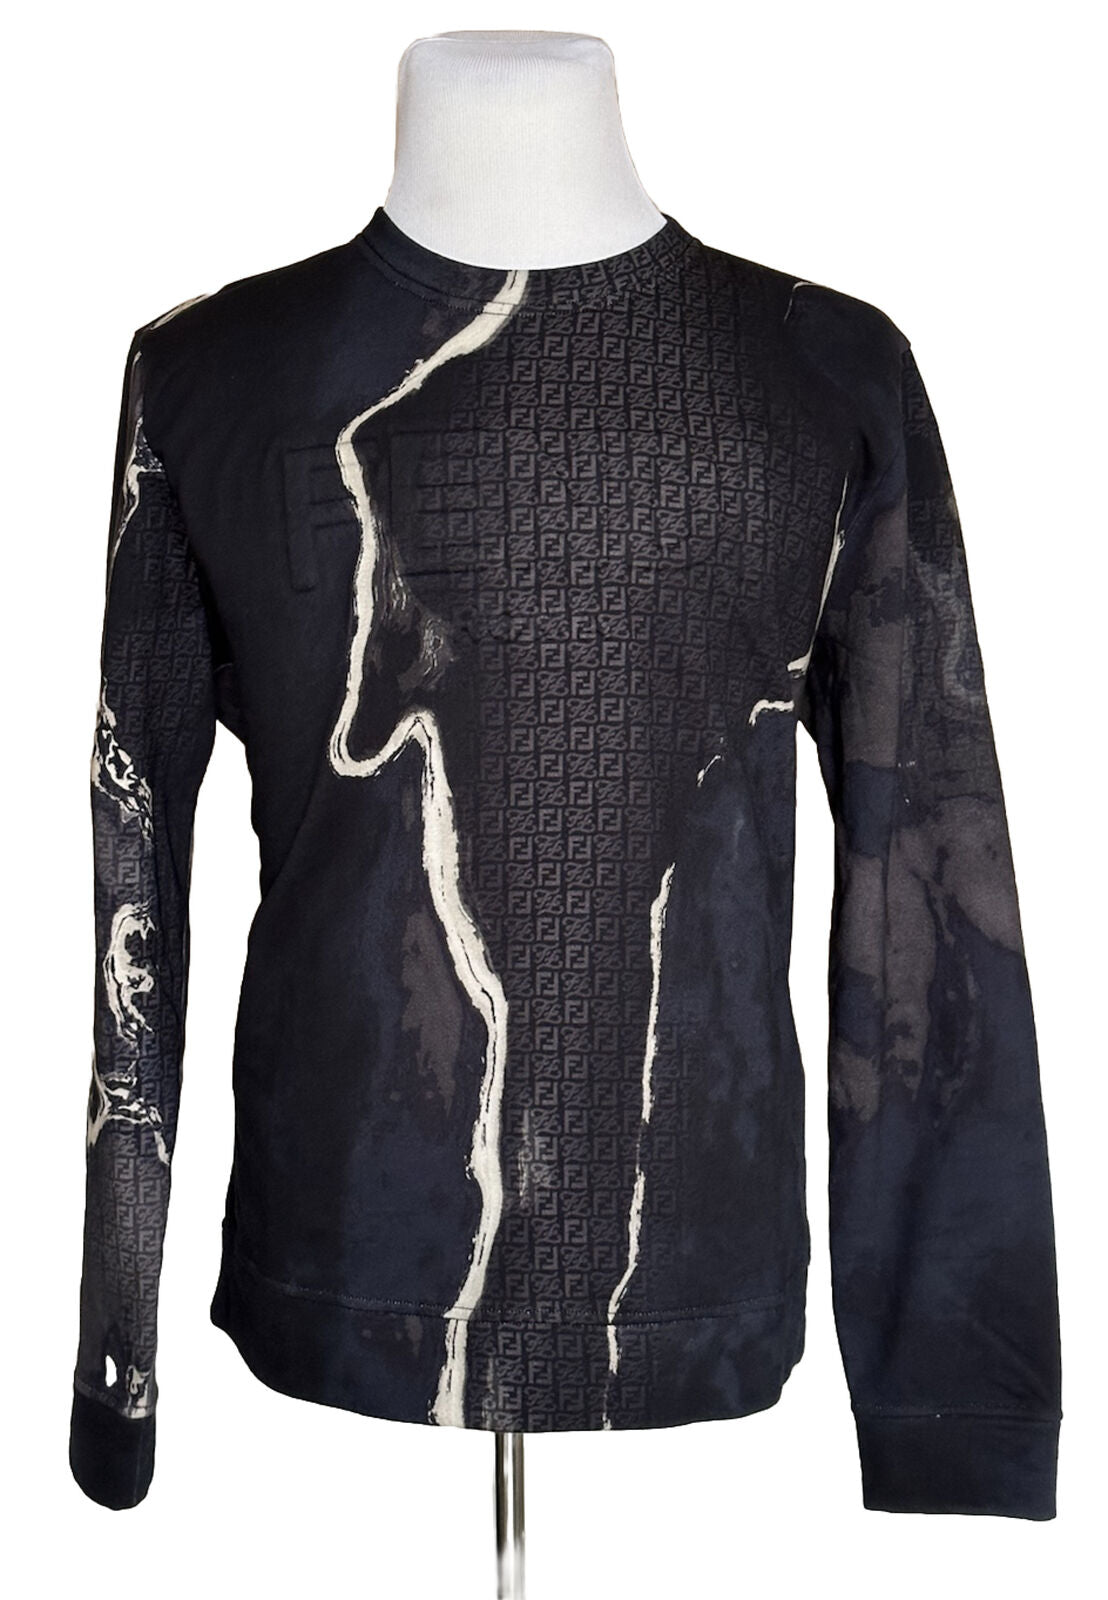 СЗТ 1350 долларов США Fendi Moonlight Вязаный хлопковый свитер L FY0178 Сделано в Италии 